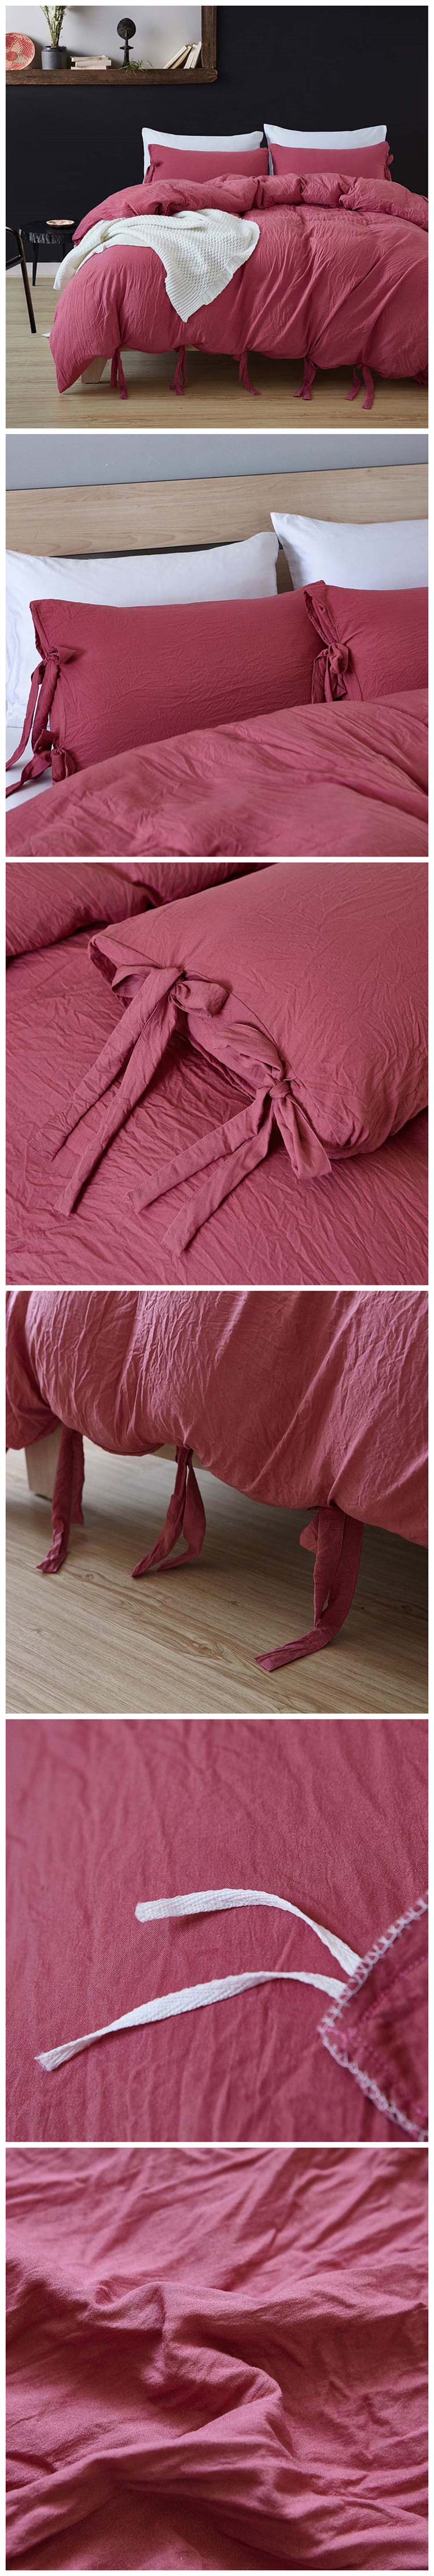 Sawdust Horse 100% Cotton Wholesale Duvet Covet With Pillow Case Item Bedding